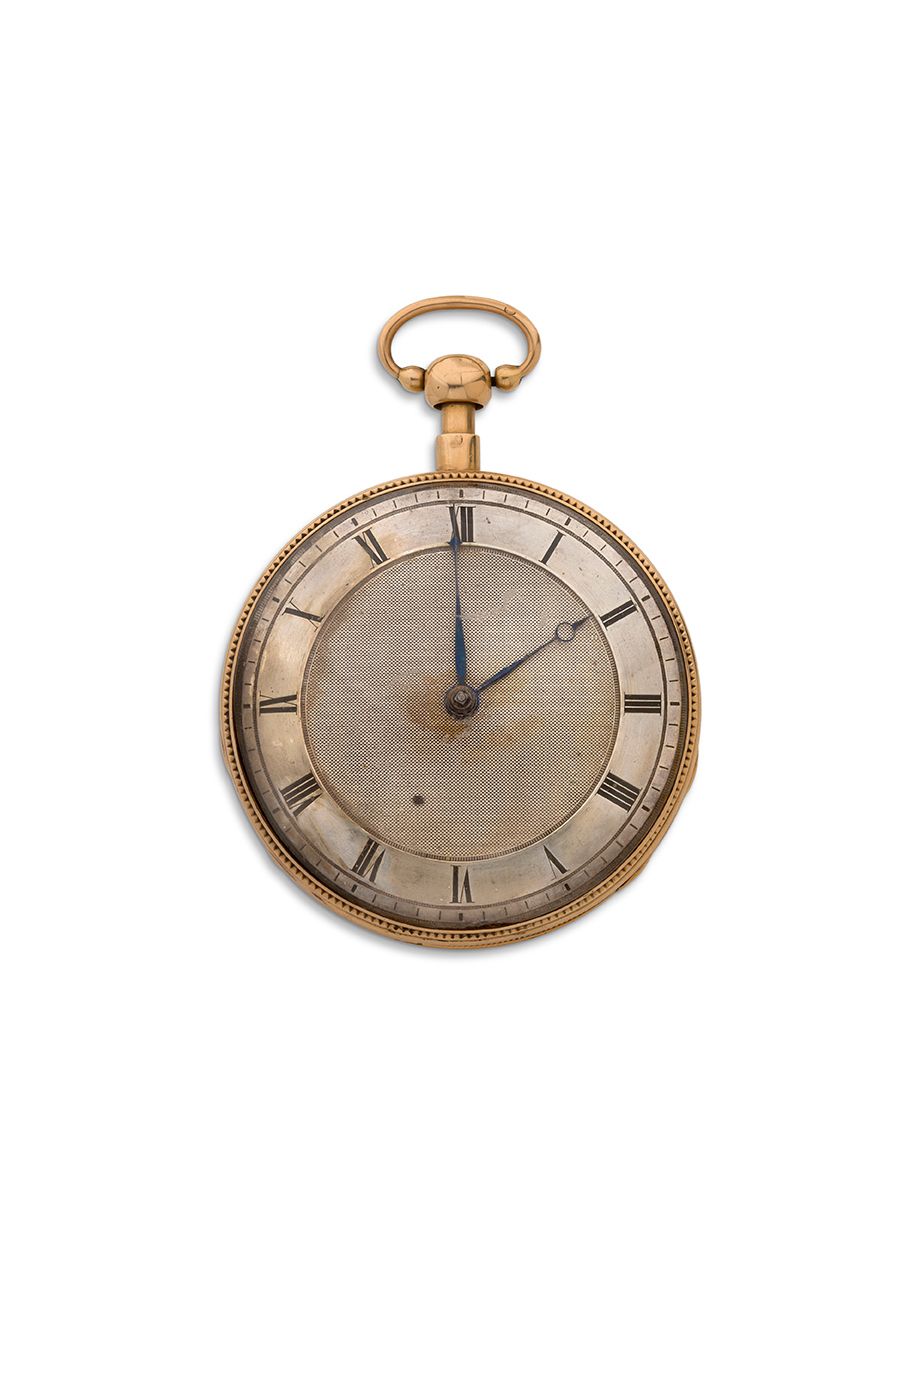 ANONYME 
Goldene Uhr mit Schlagwerk und Viertelstundenrepetition.



Scharnierge&hellip;